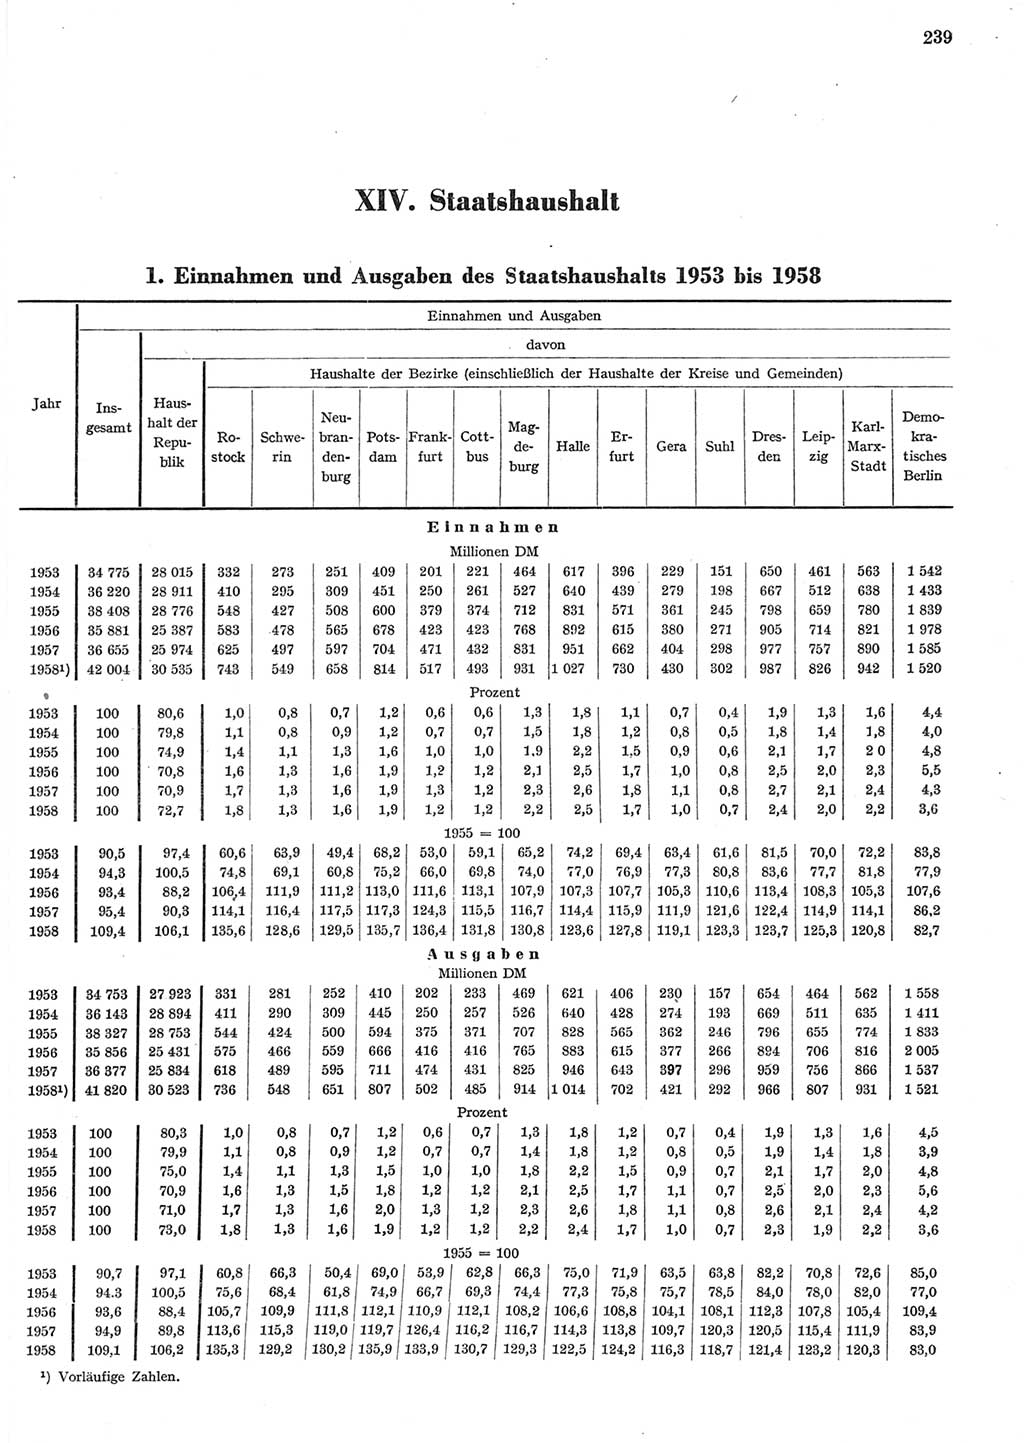 Statistisches Jahrbuch der Deutschen Demokratischen Republik (DDR) 1958, Seite 239 (Stat. Jb. DDR 1958, S. 239)